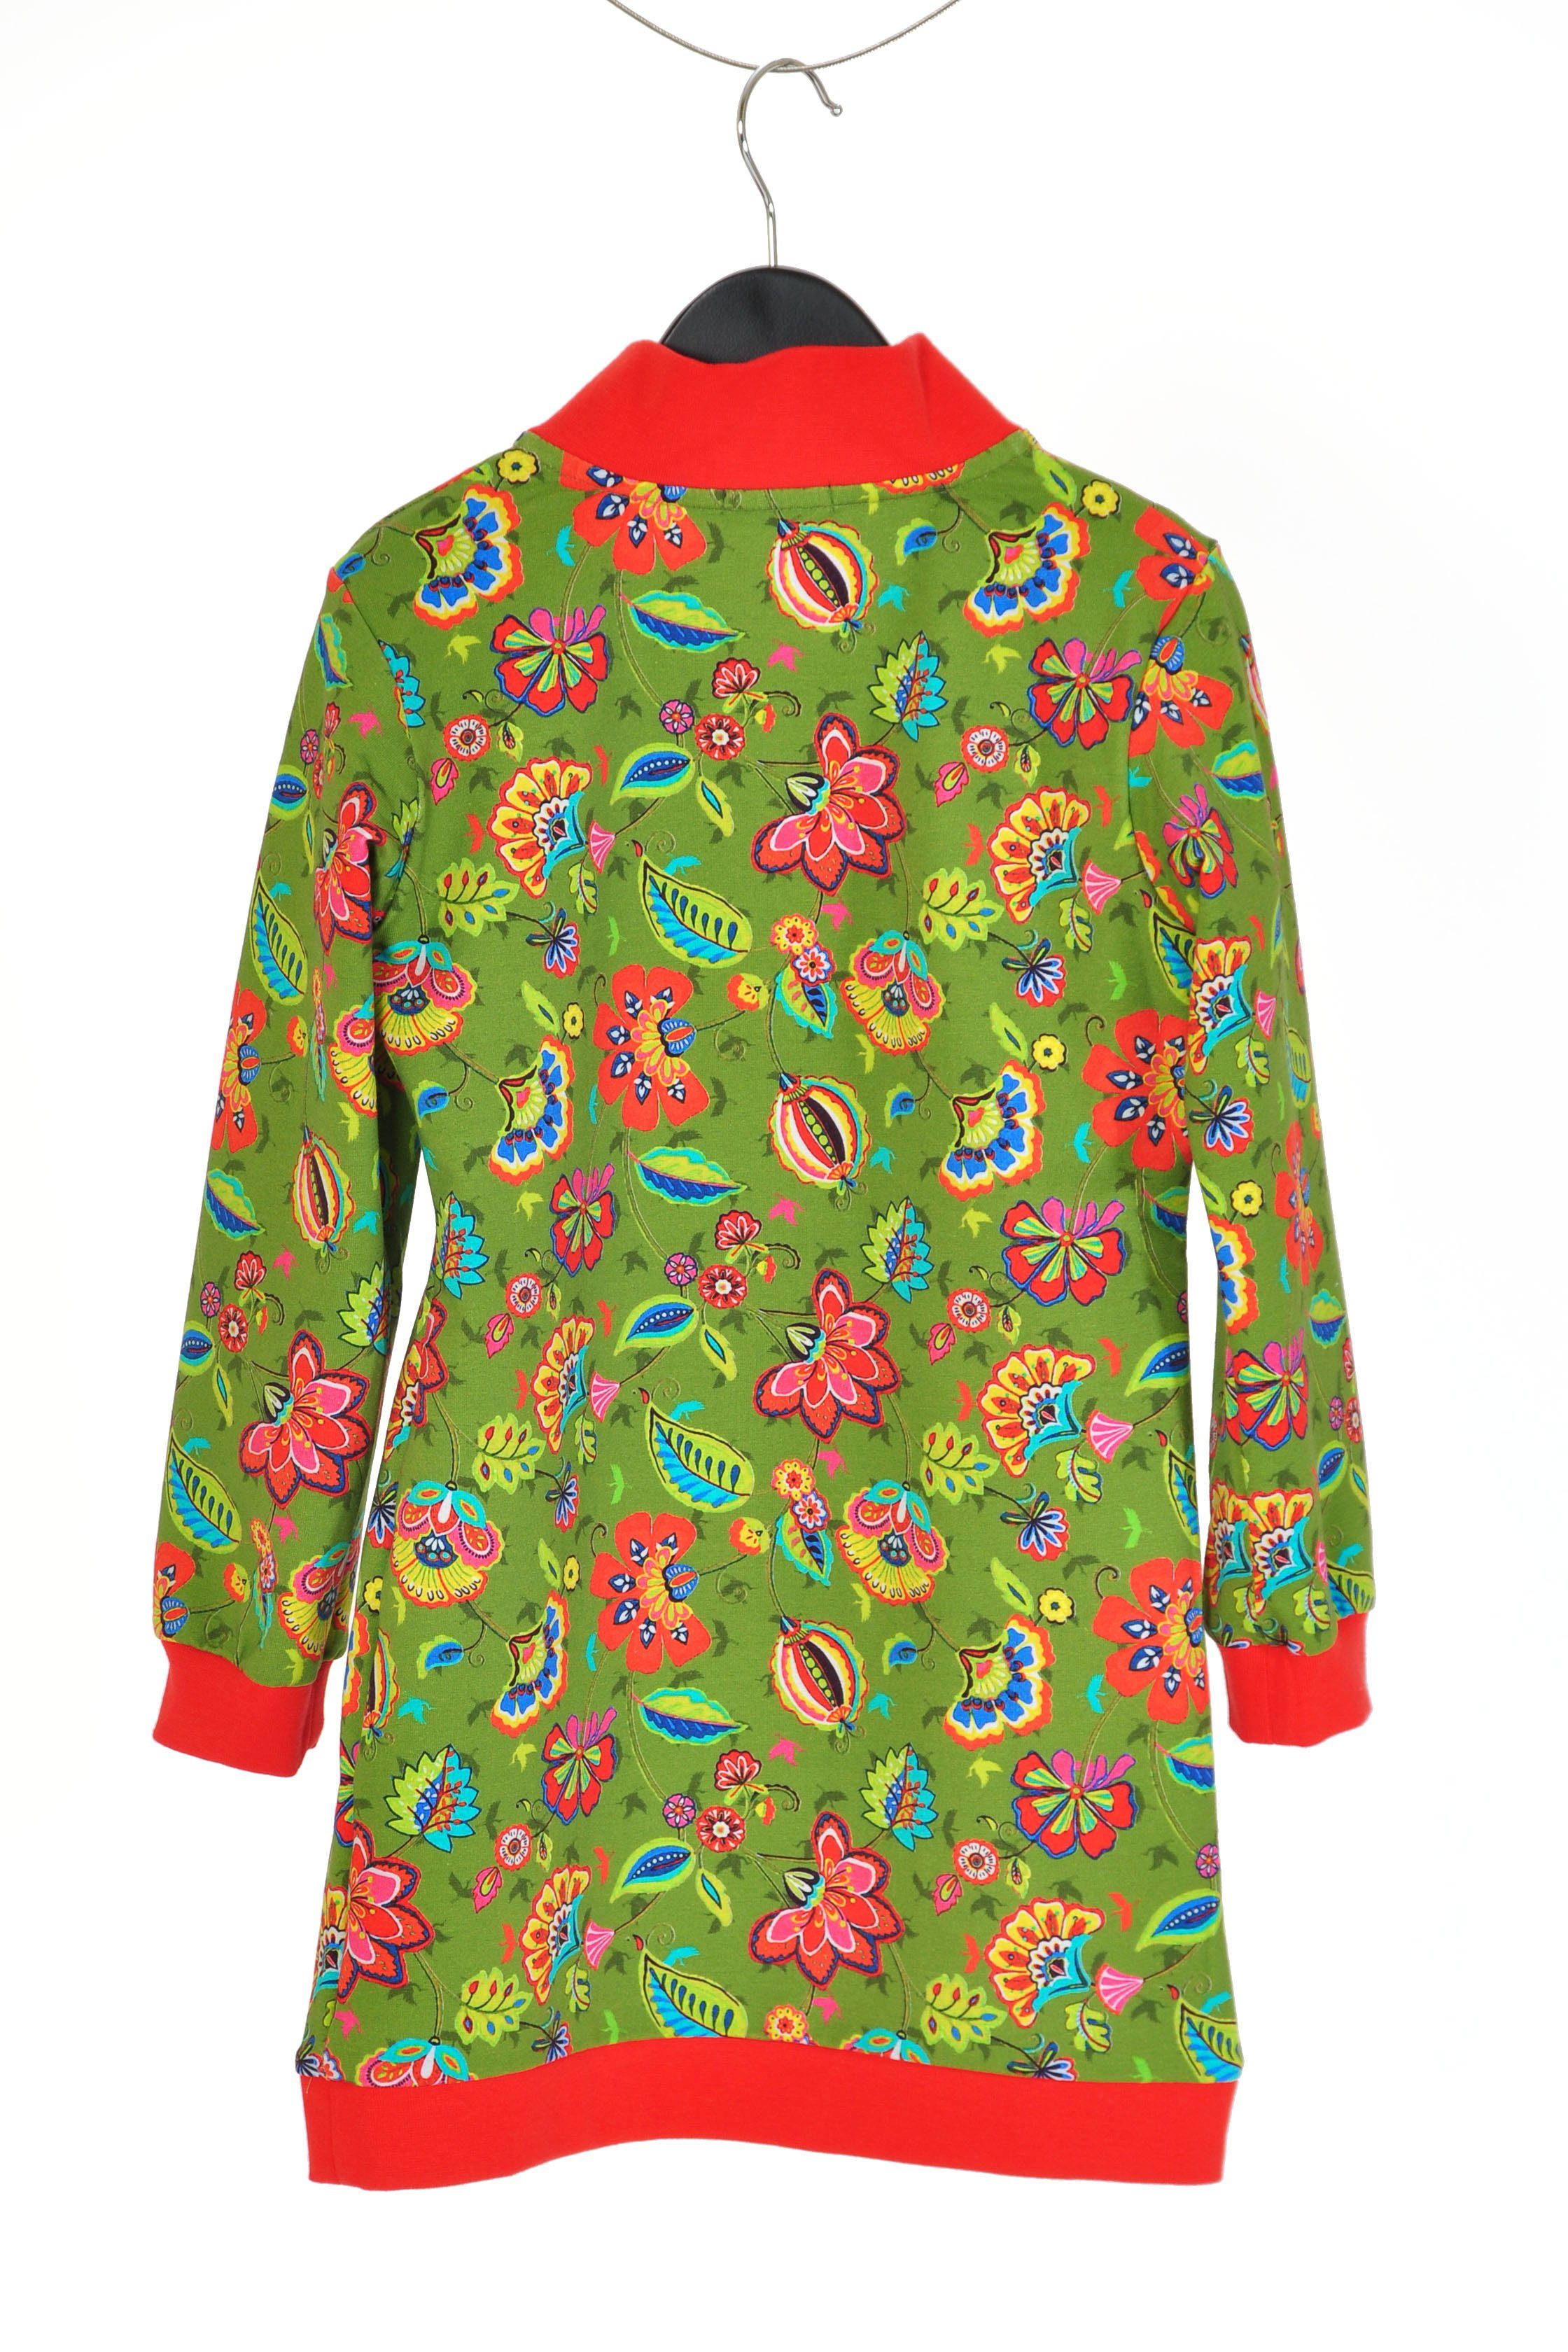 coolismo Sweatkleid oliv Blumen coole mit Sweatshirt Produktion europäische für Mädchen Kleid Motivdruck